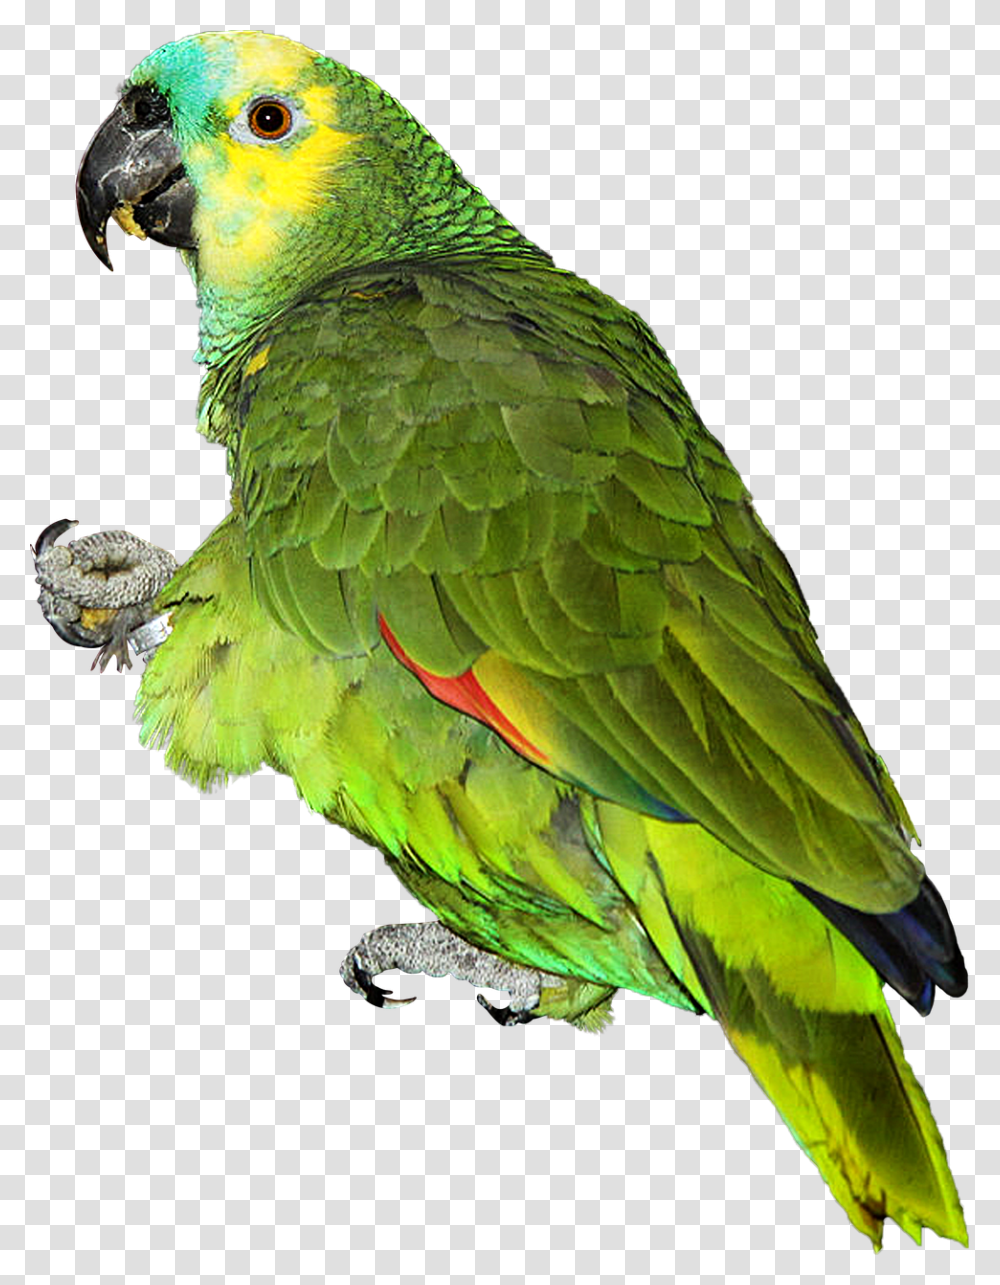 Parrot, Bird, Animal, Macaw, Parakeet Transparent Png